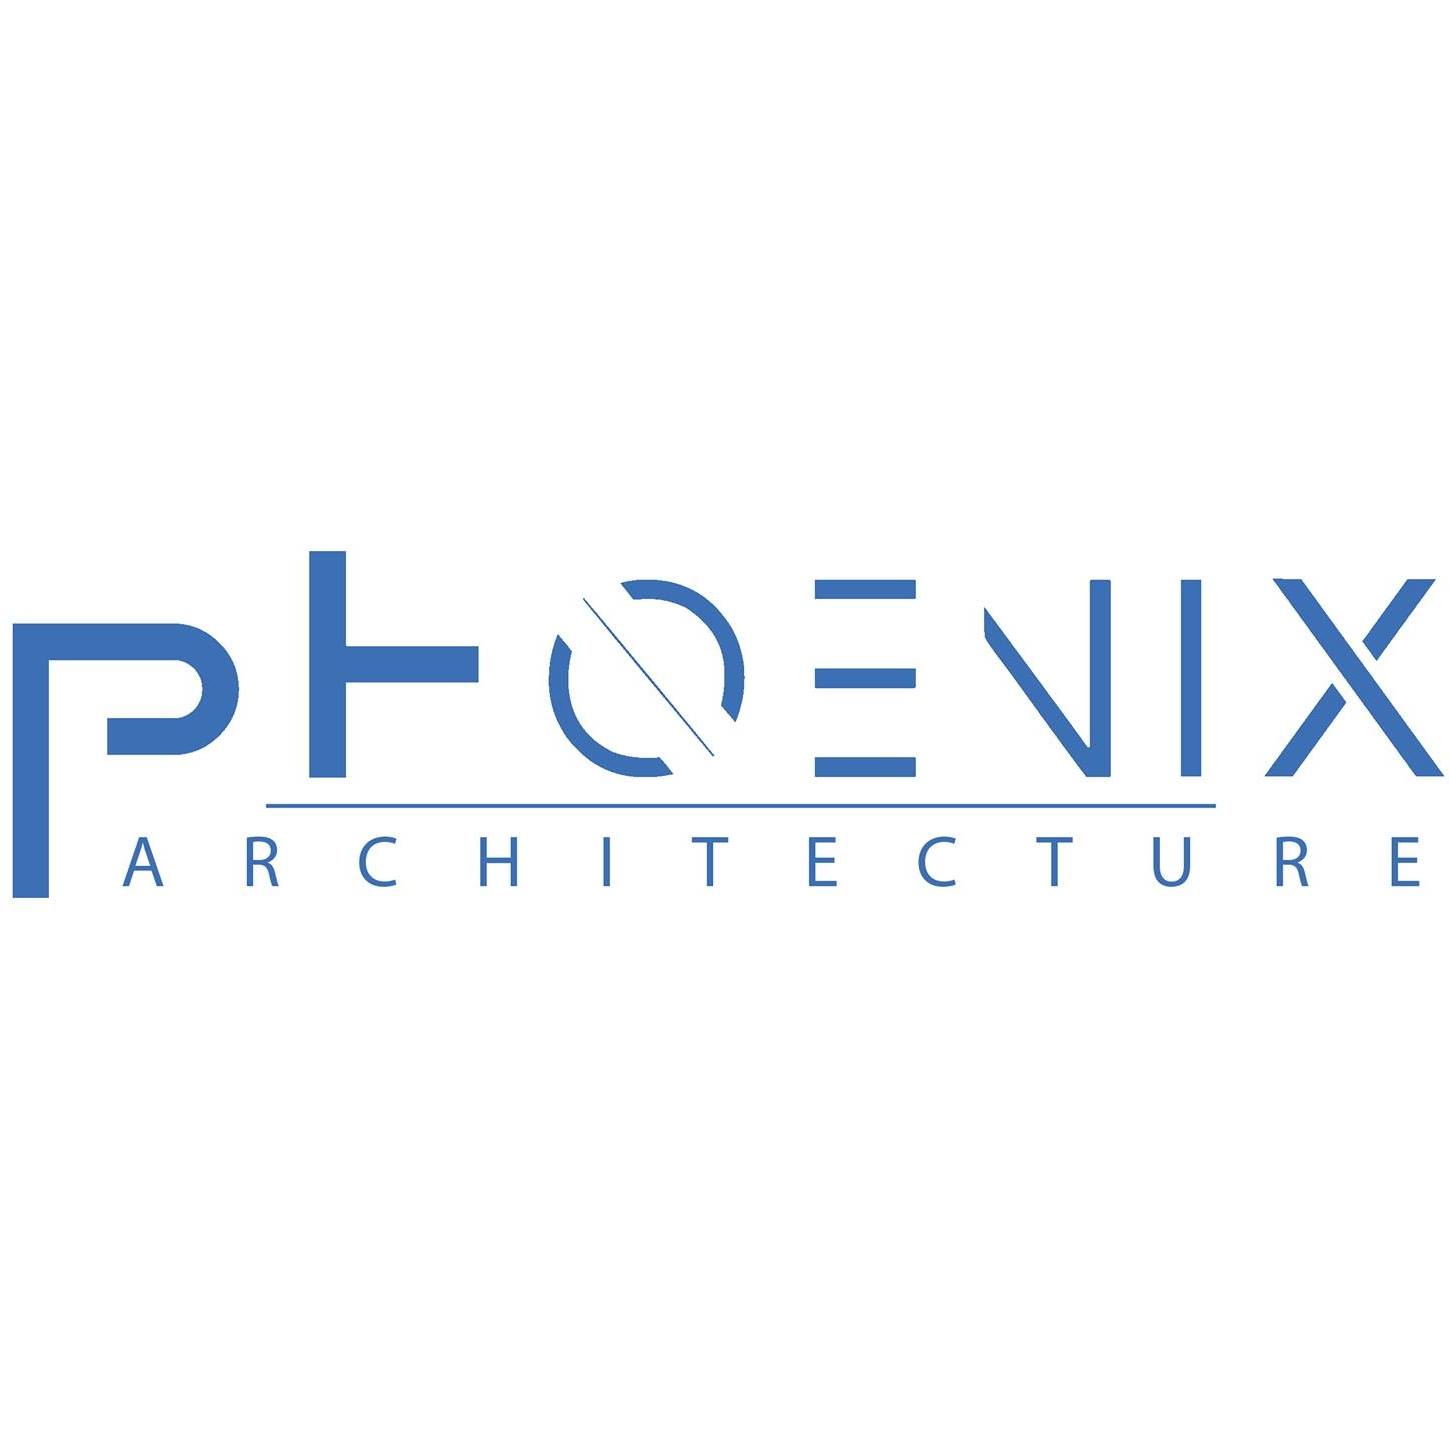 PHOENIX ARCHITECTURE|IT Services|Professional Services